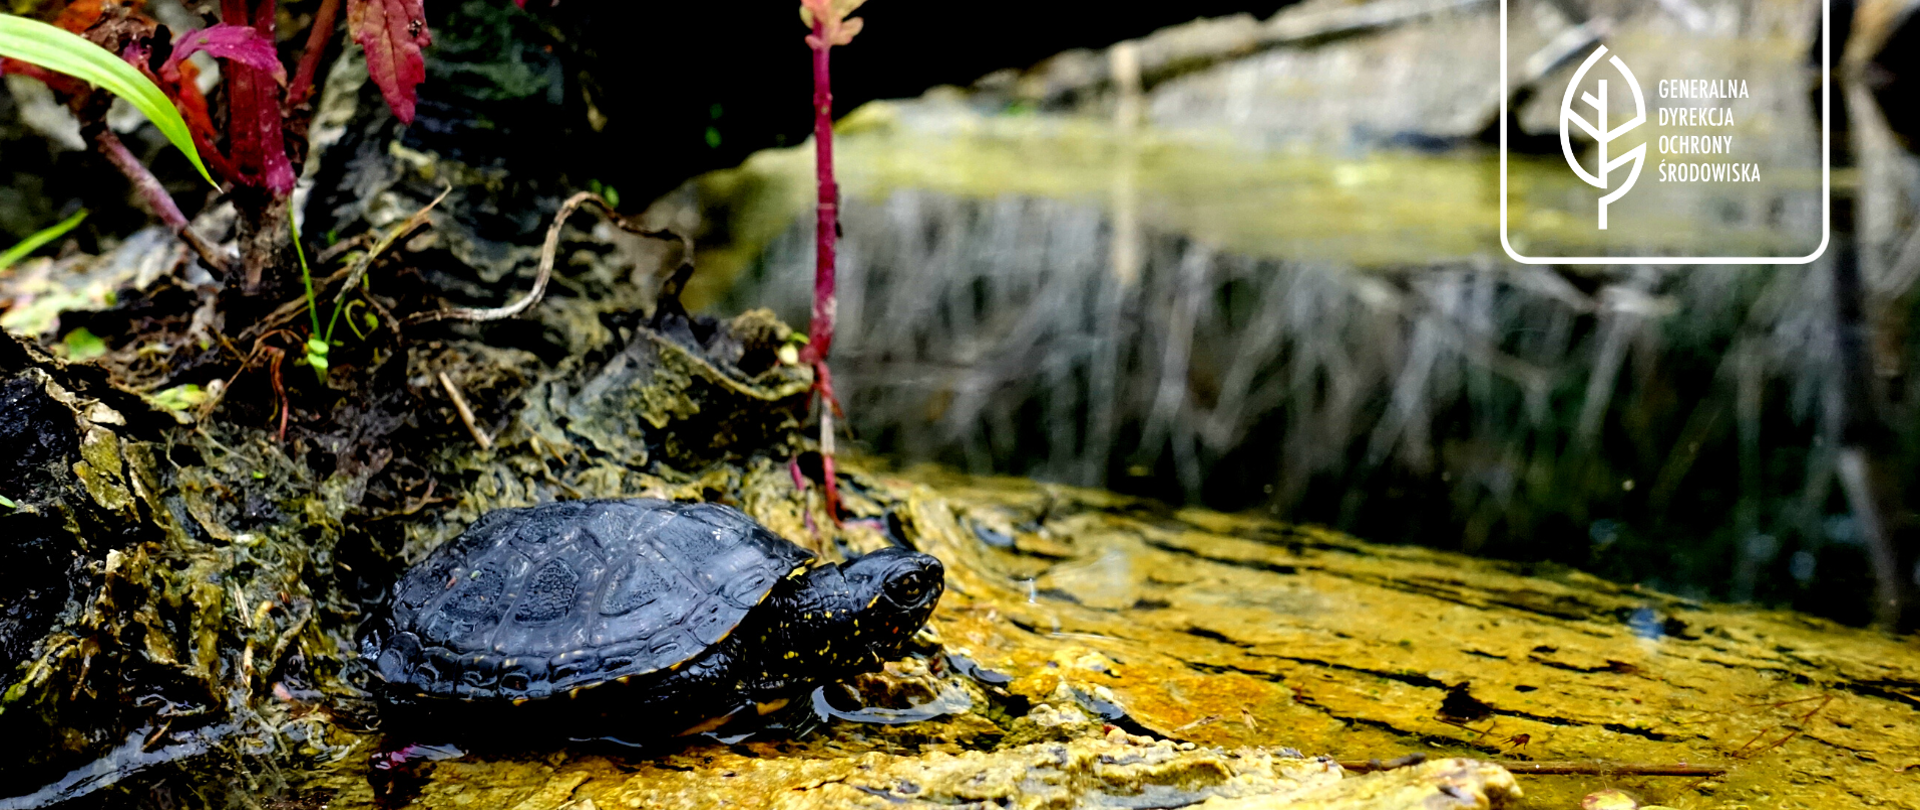 na pierwszym planie żółw błotny, który do połowy zanurzony jest w wodzie, za żółwiem oraz w oddali widać rośliny, w prawym górnym rogu logo Generalnej Dyrekcji Ochrony Środowiska